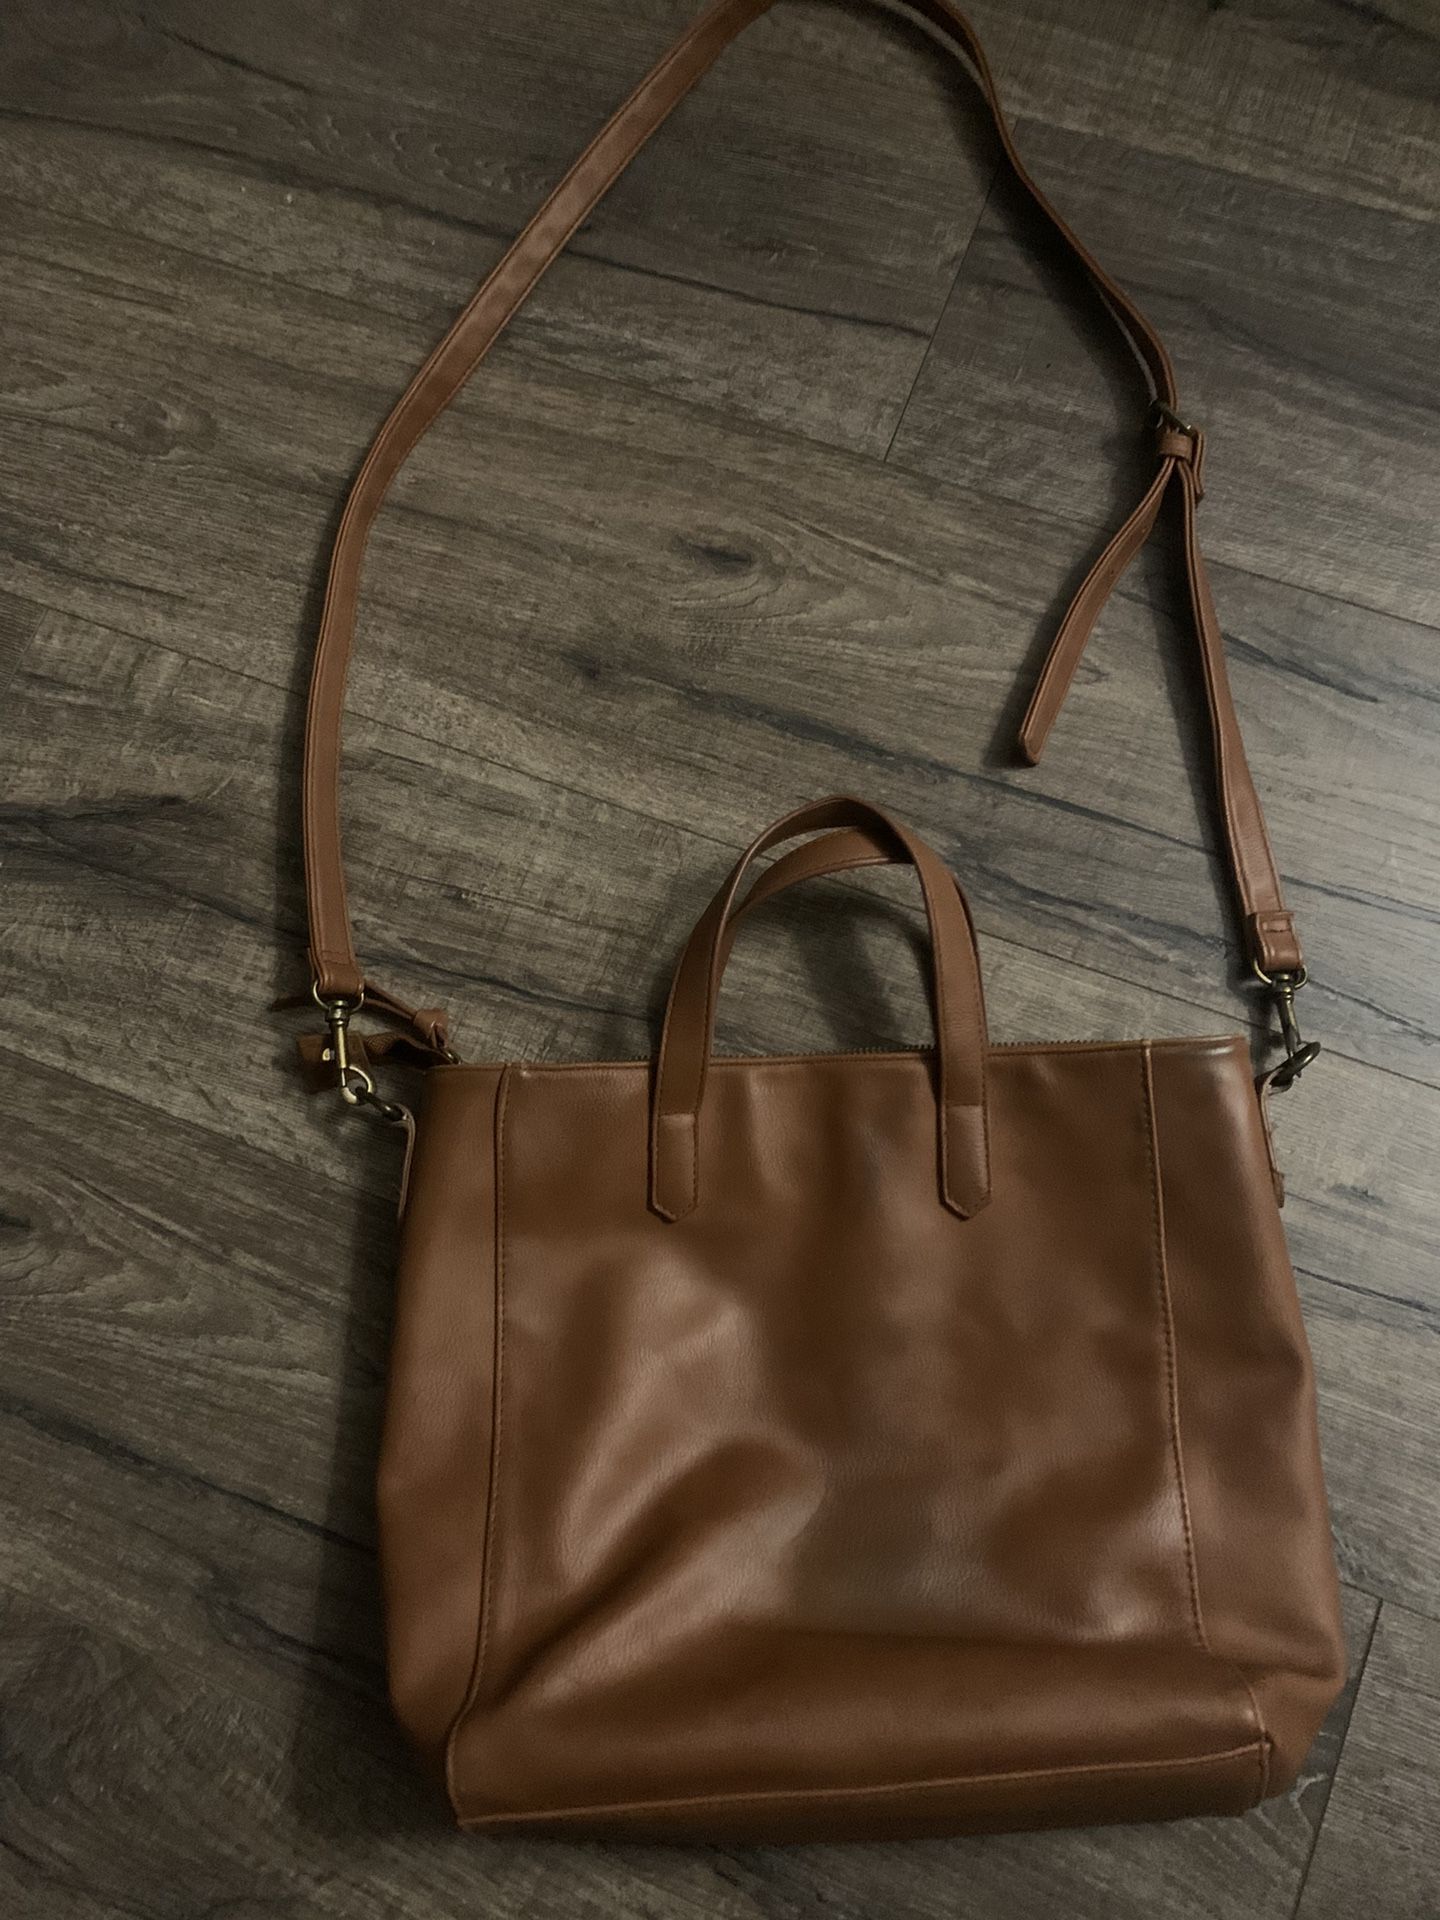 Universal Thread cognac faux leather purse. Handles or detachable shoulder strap